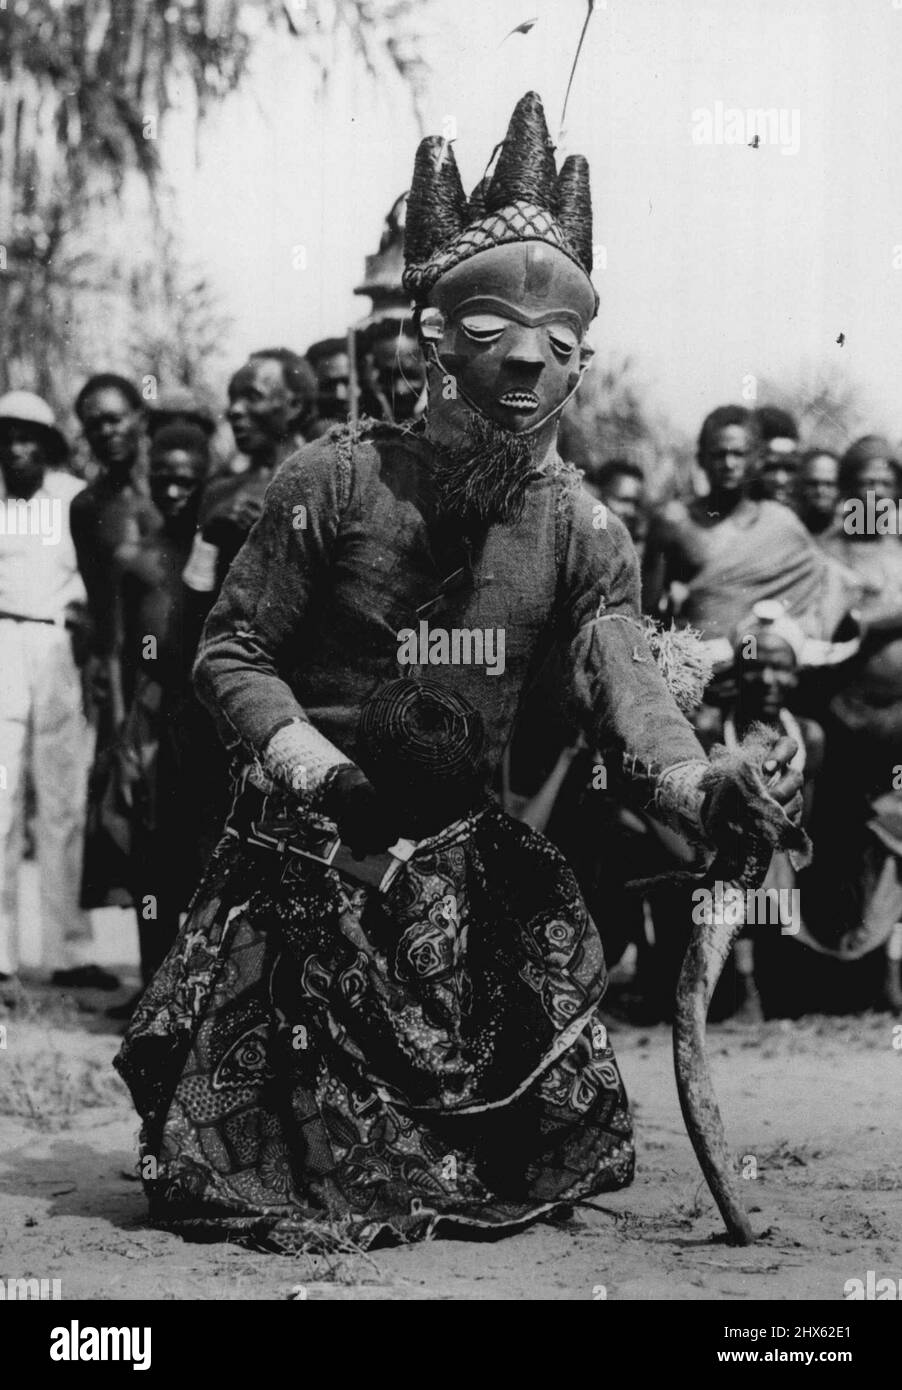 Congo Folklore -- Aufruf zum Segen des Regens ist dieser Hexenarzt während des Mbuya-Tanzes des Bapende Tribe. In seiner rechten Hand ist ein Korb gefüllt mit getrockneten Samen, und in seiner linken ein Antilopenhorn gefüllt mit geheimnisvollem Pulver. Der Mbuya-Tanz ist ein afrikanisches Folklore-„Spiel“ mit bis zu zwanzig Charakteren. Die Folklore Afrikas liegt nicht in Büchern, sondern in den rhythmischen Tribal-Tänzen, die von Generation zu Generation weitergegeben werden. Die Ursprünge der Tänze Schritte, die Gesten und die s Stockfoto